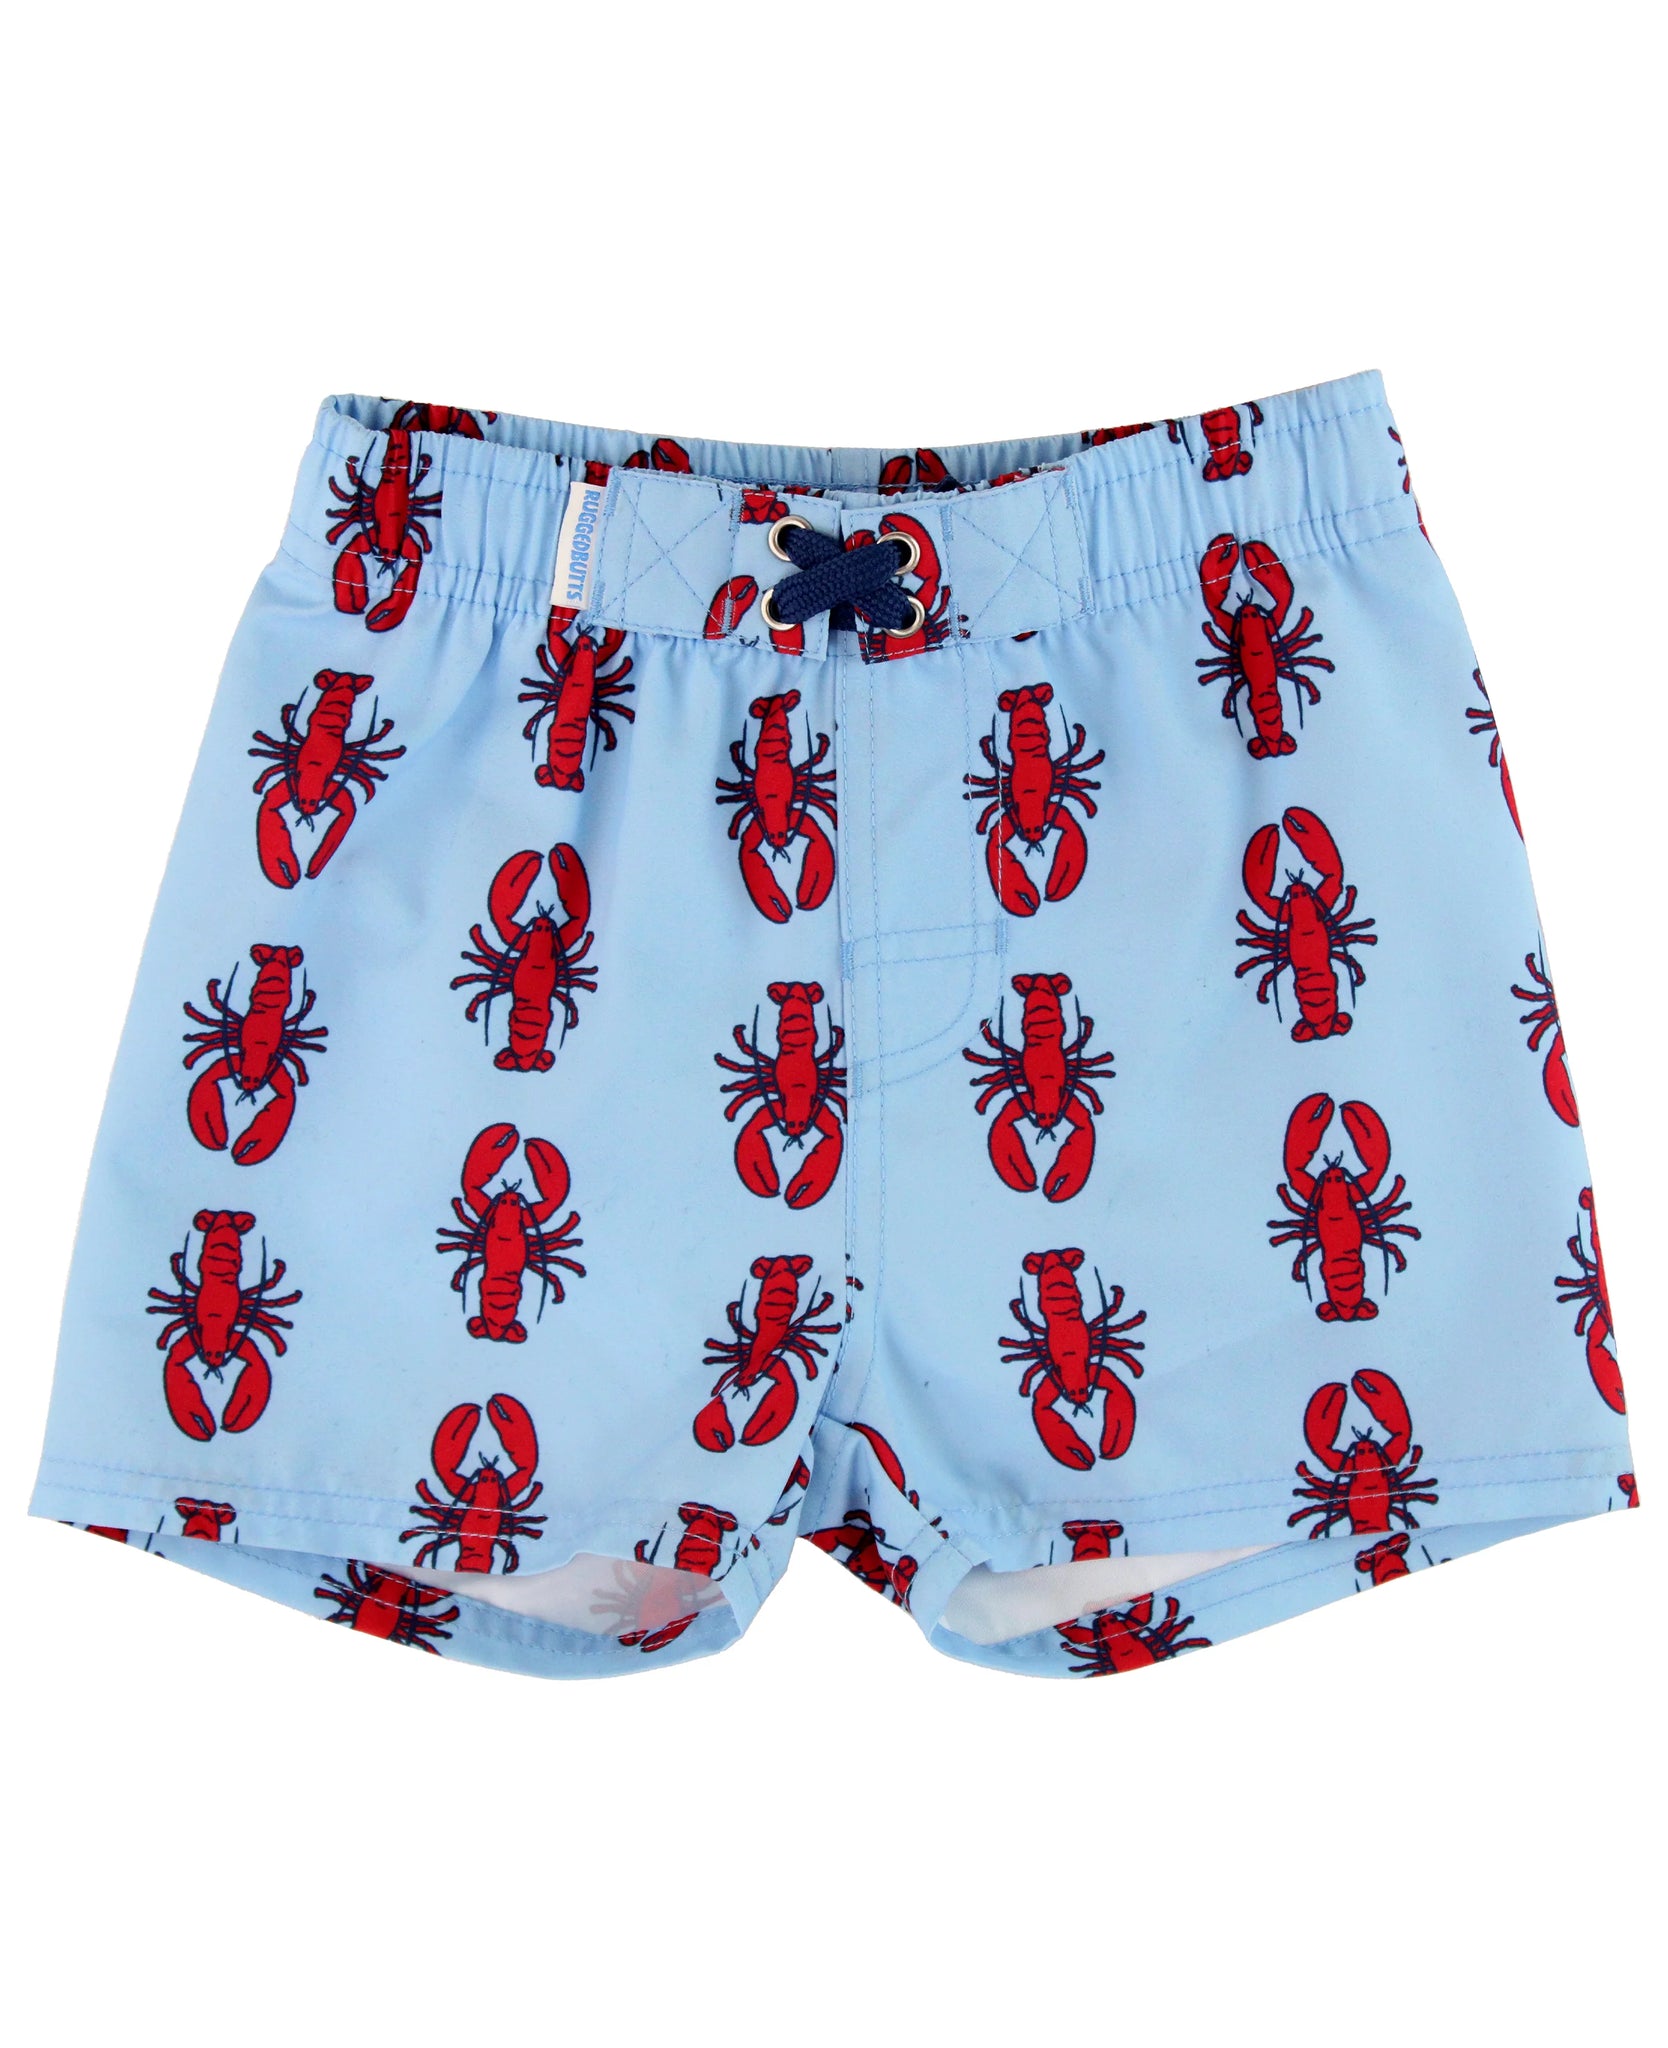 blue lobster swim trunks